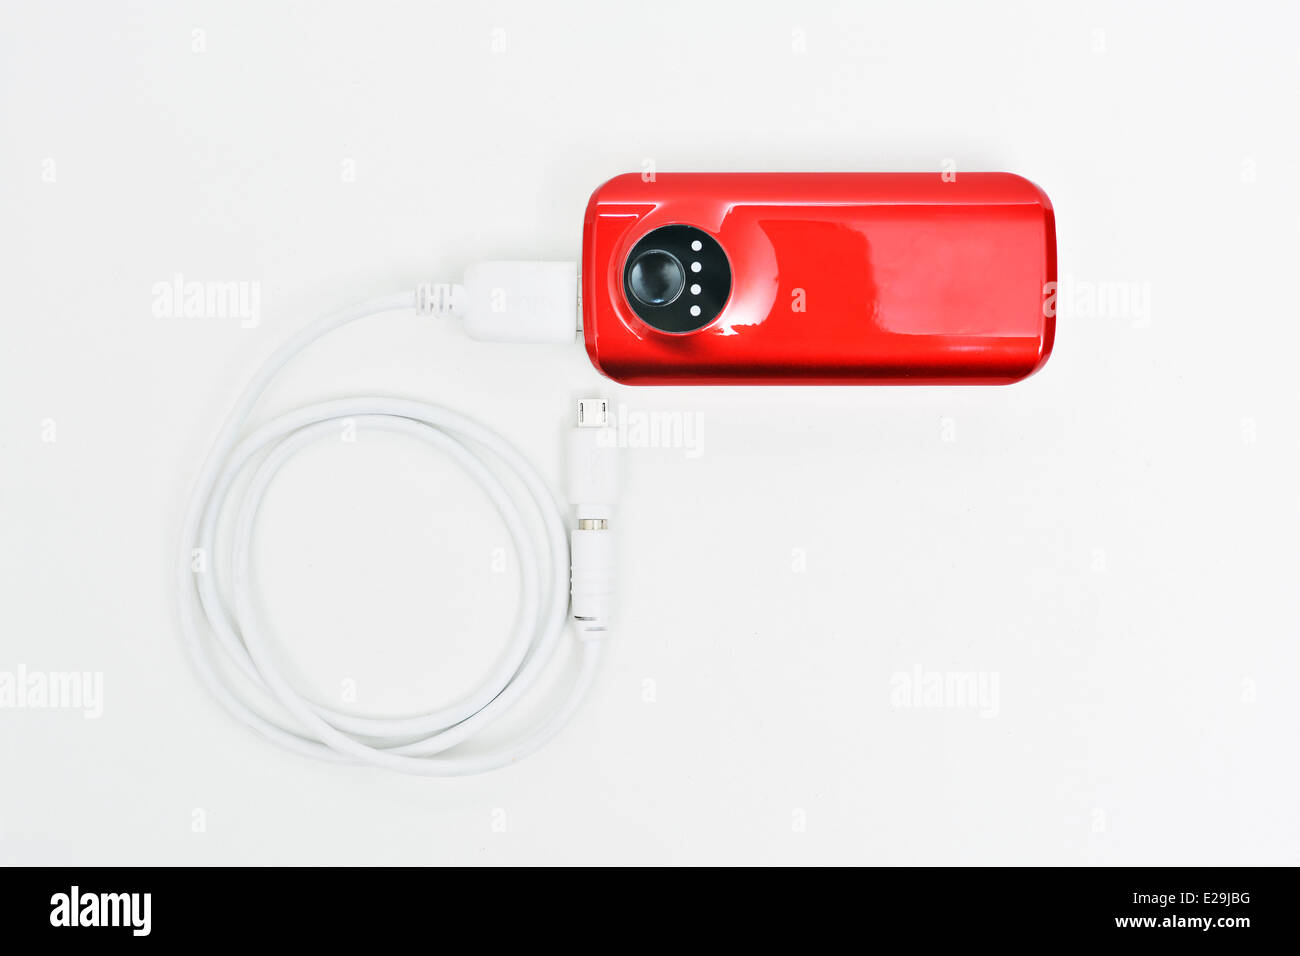 Banca di potenza, di un dispositivo di piccole dimensioni che dispongono di energia elettrica per la ricarica di molti tipi di smart phone tramite USB. Foto Stock